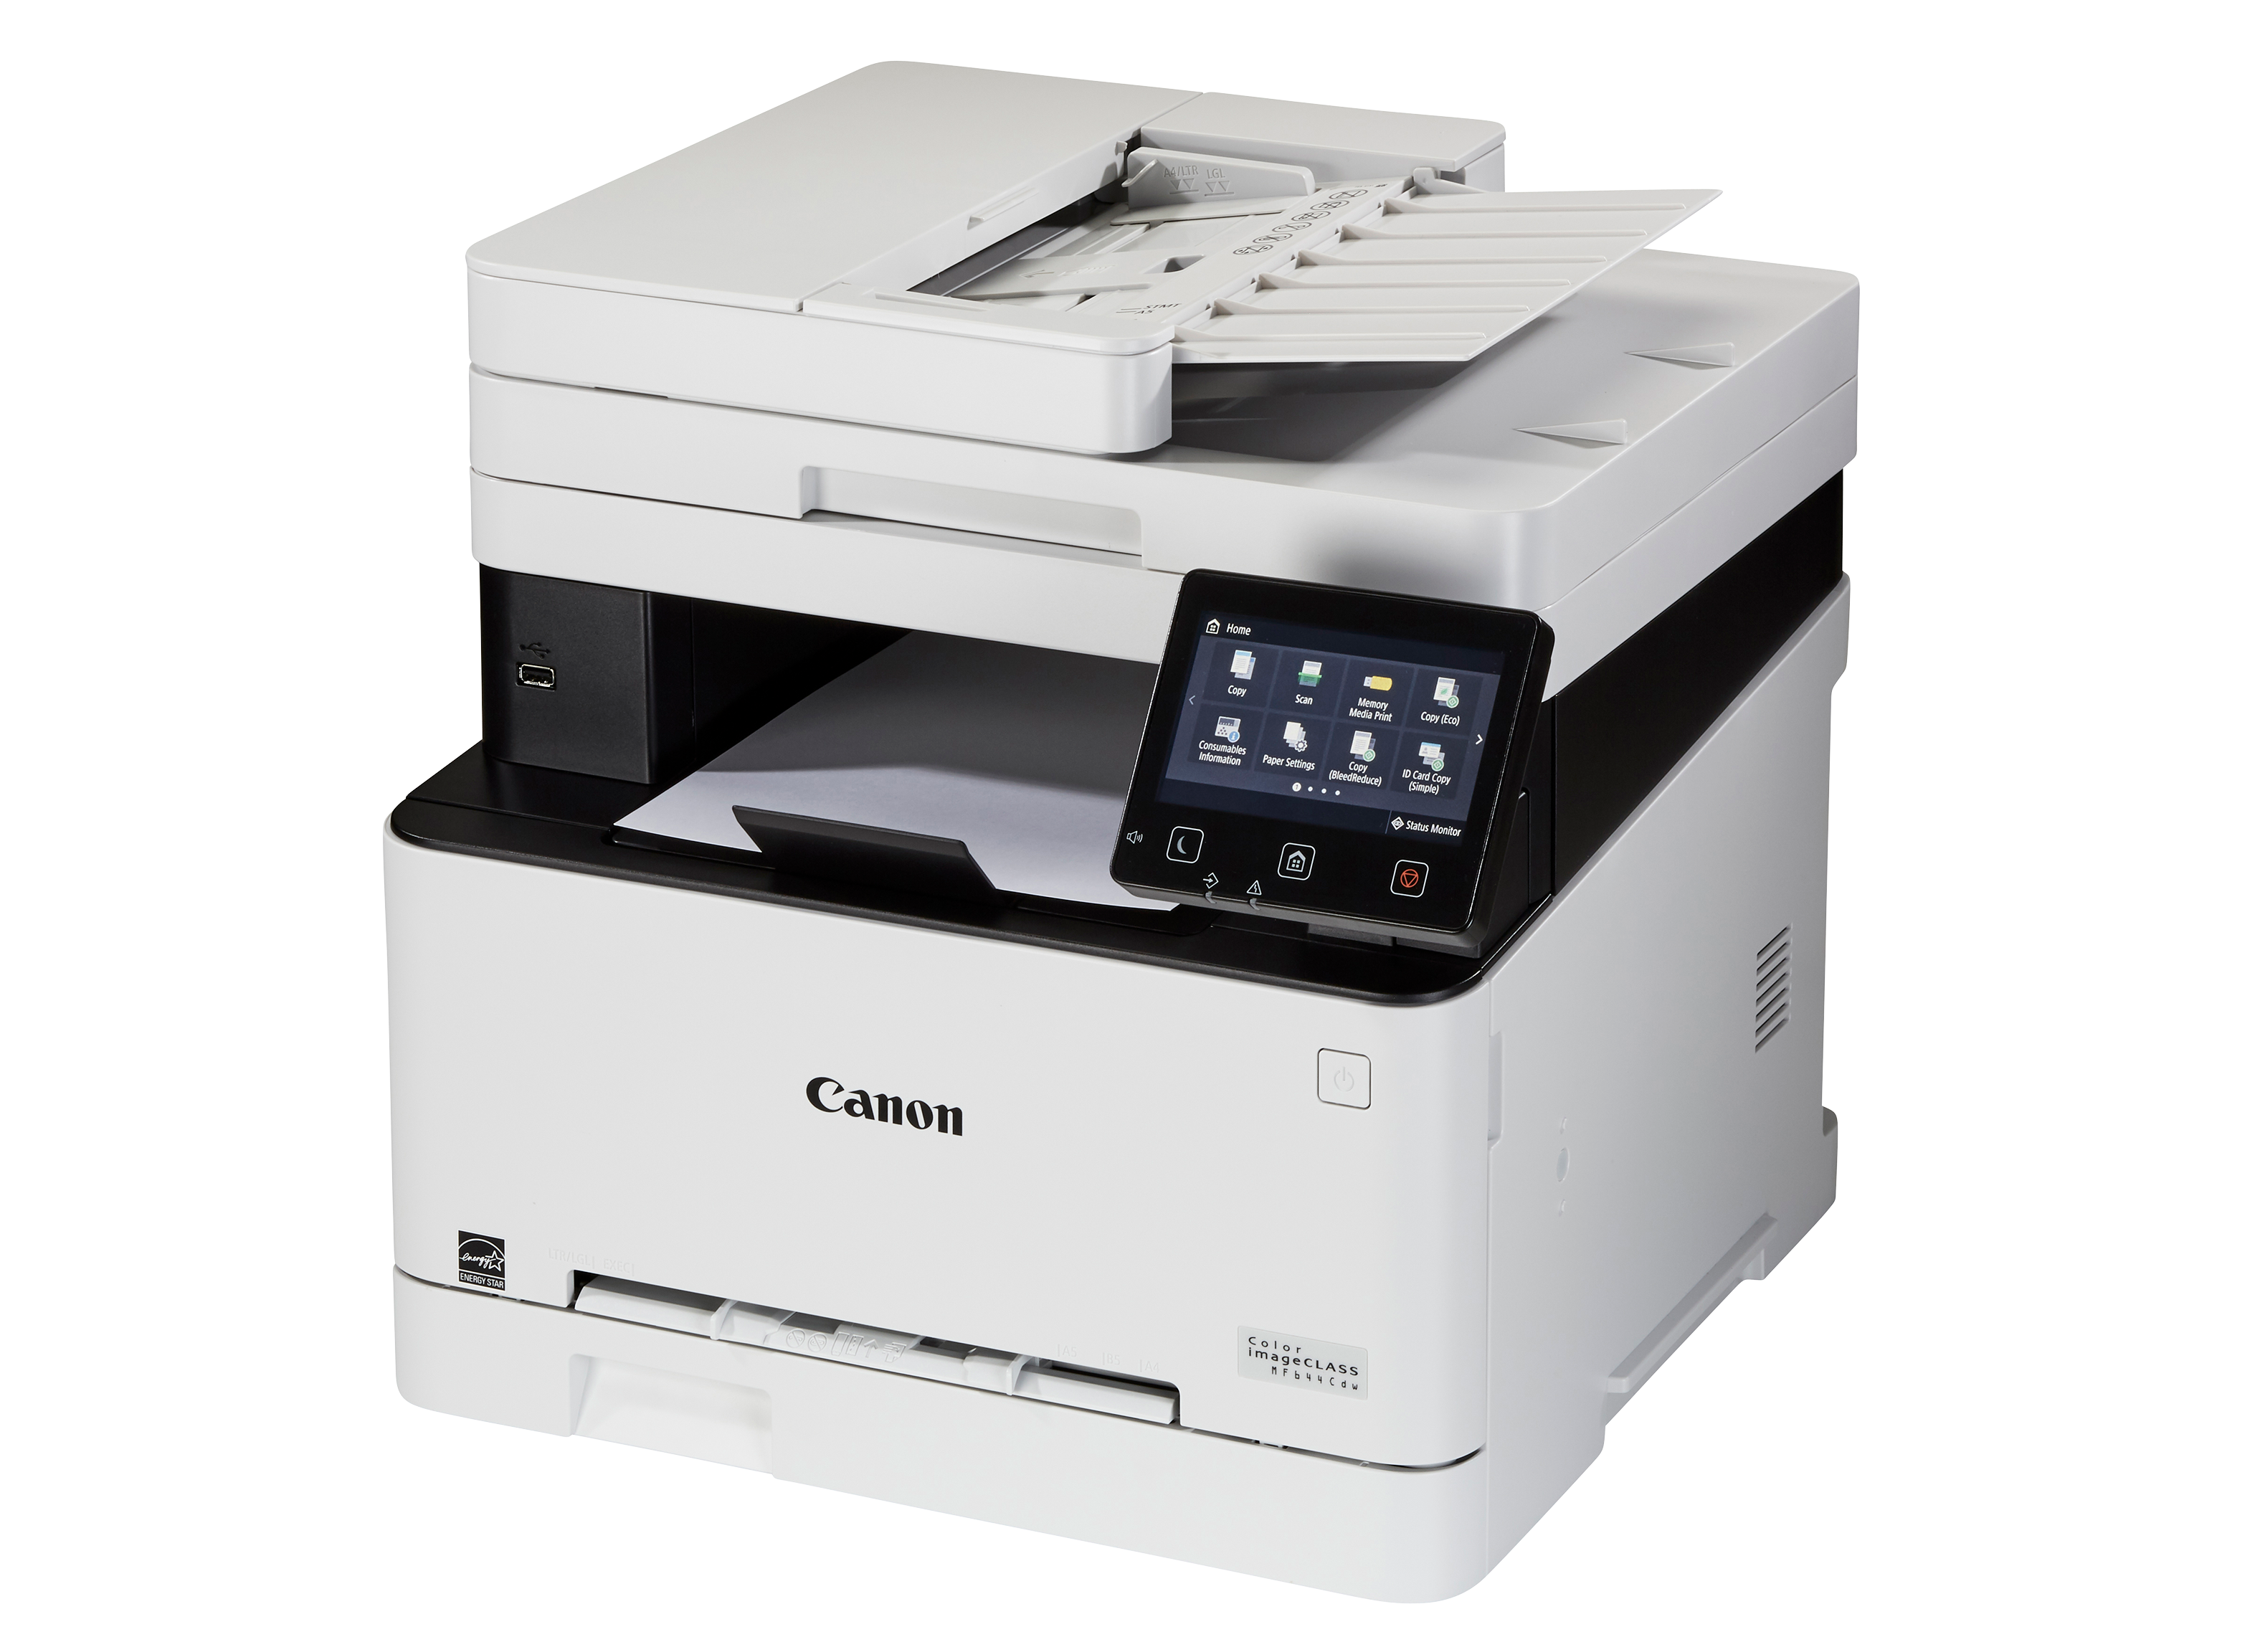 Canon Color imageCLASS Printer - Consumer